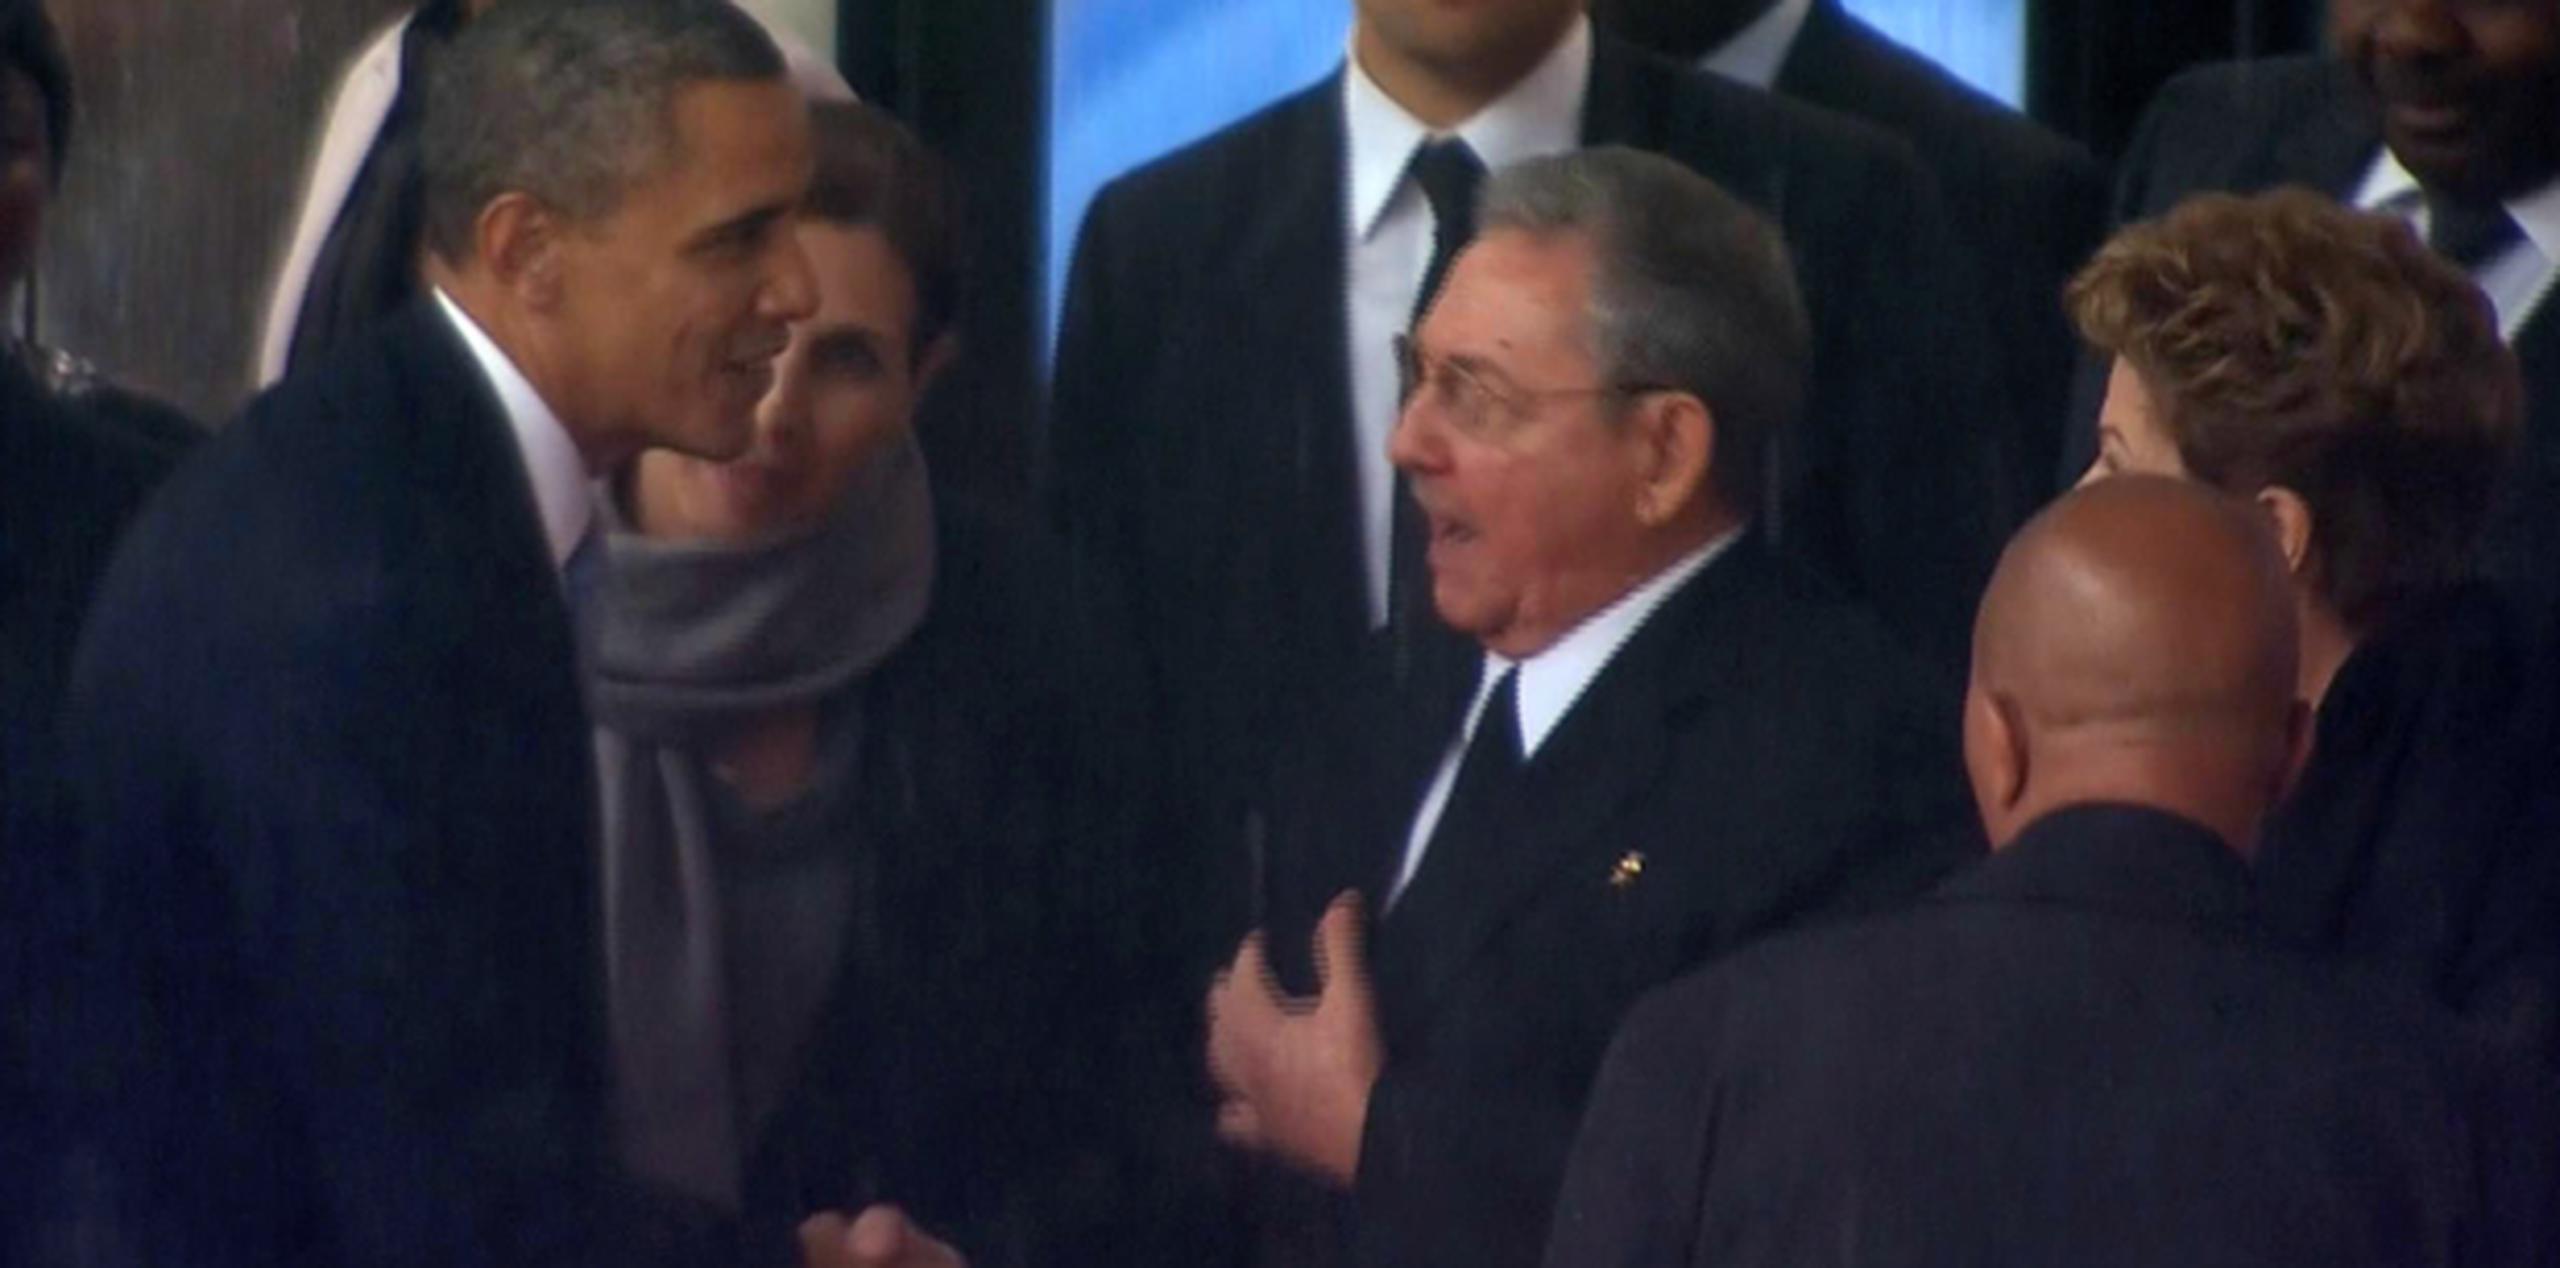 El saludo entre los líderes de dos enemigos de la Guerra Fría ocurrió durante una ceremonia centrada en el legado de reconciliación de Mandela.  (AP)